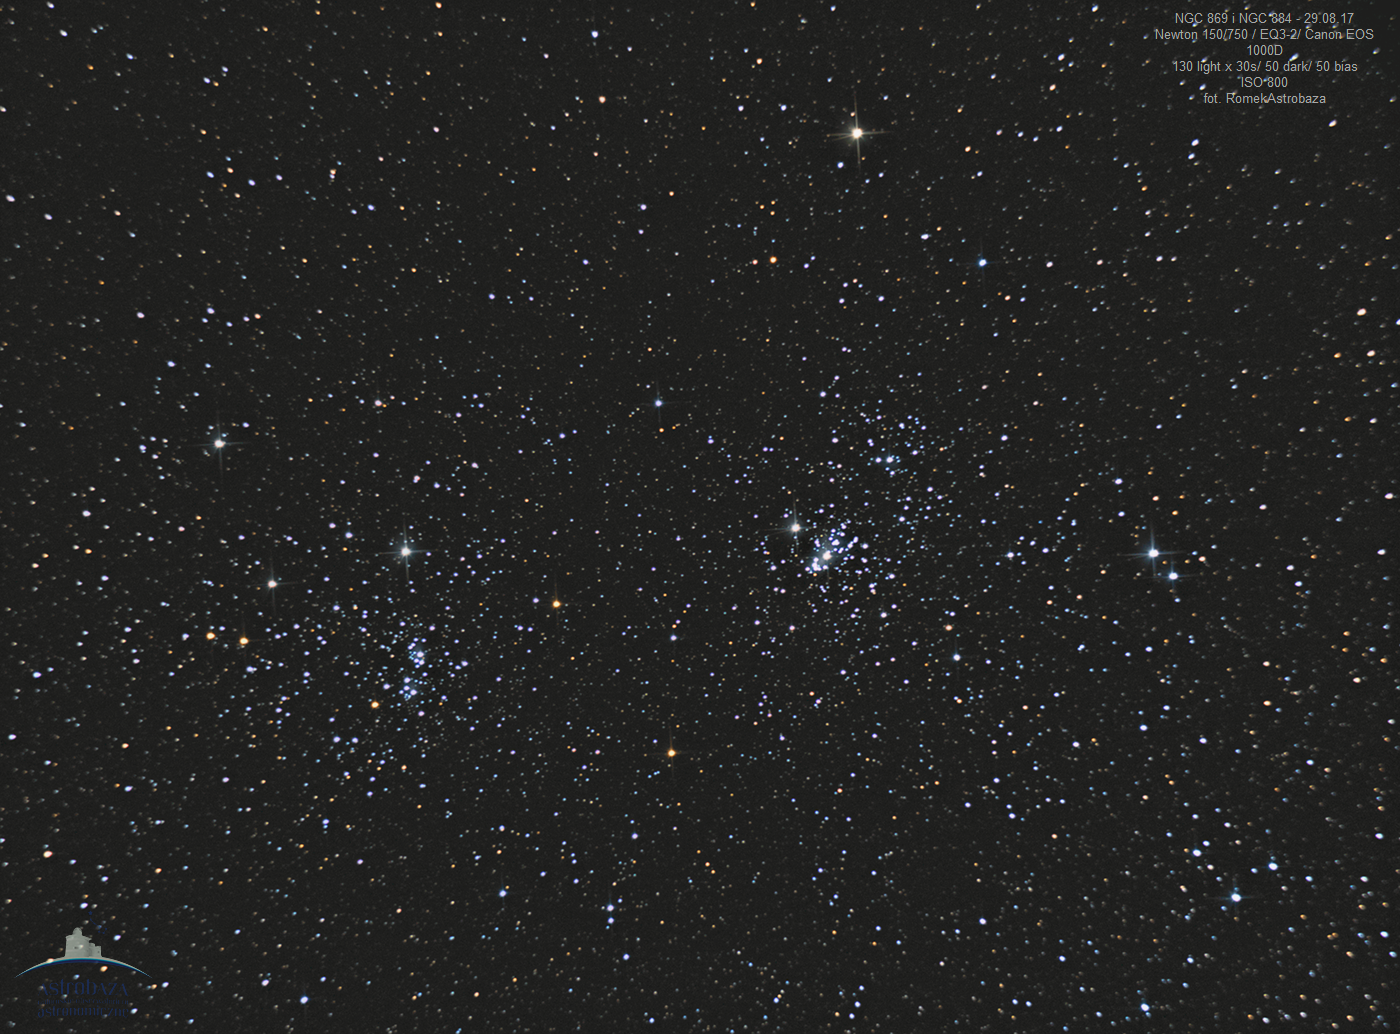 NGC869_884_130b_2a.png.74f564dca574d54243f6bb2ec0123f1c.png